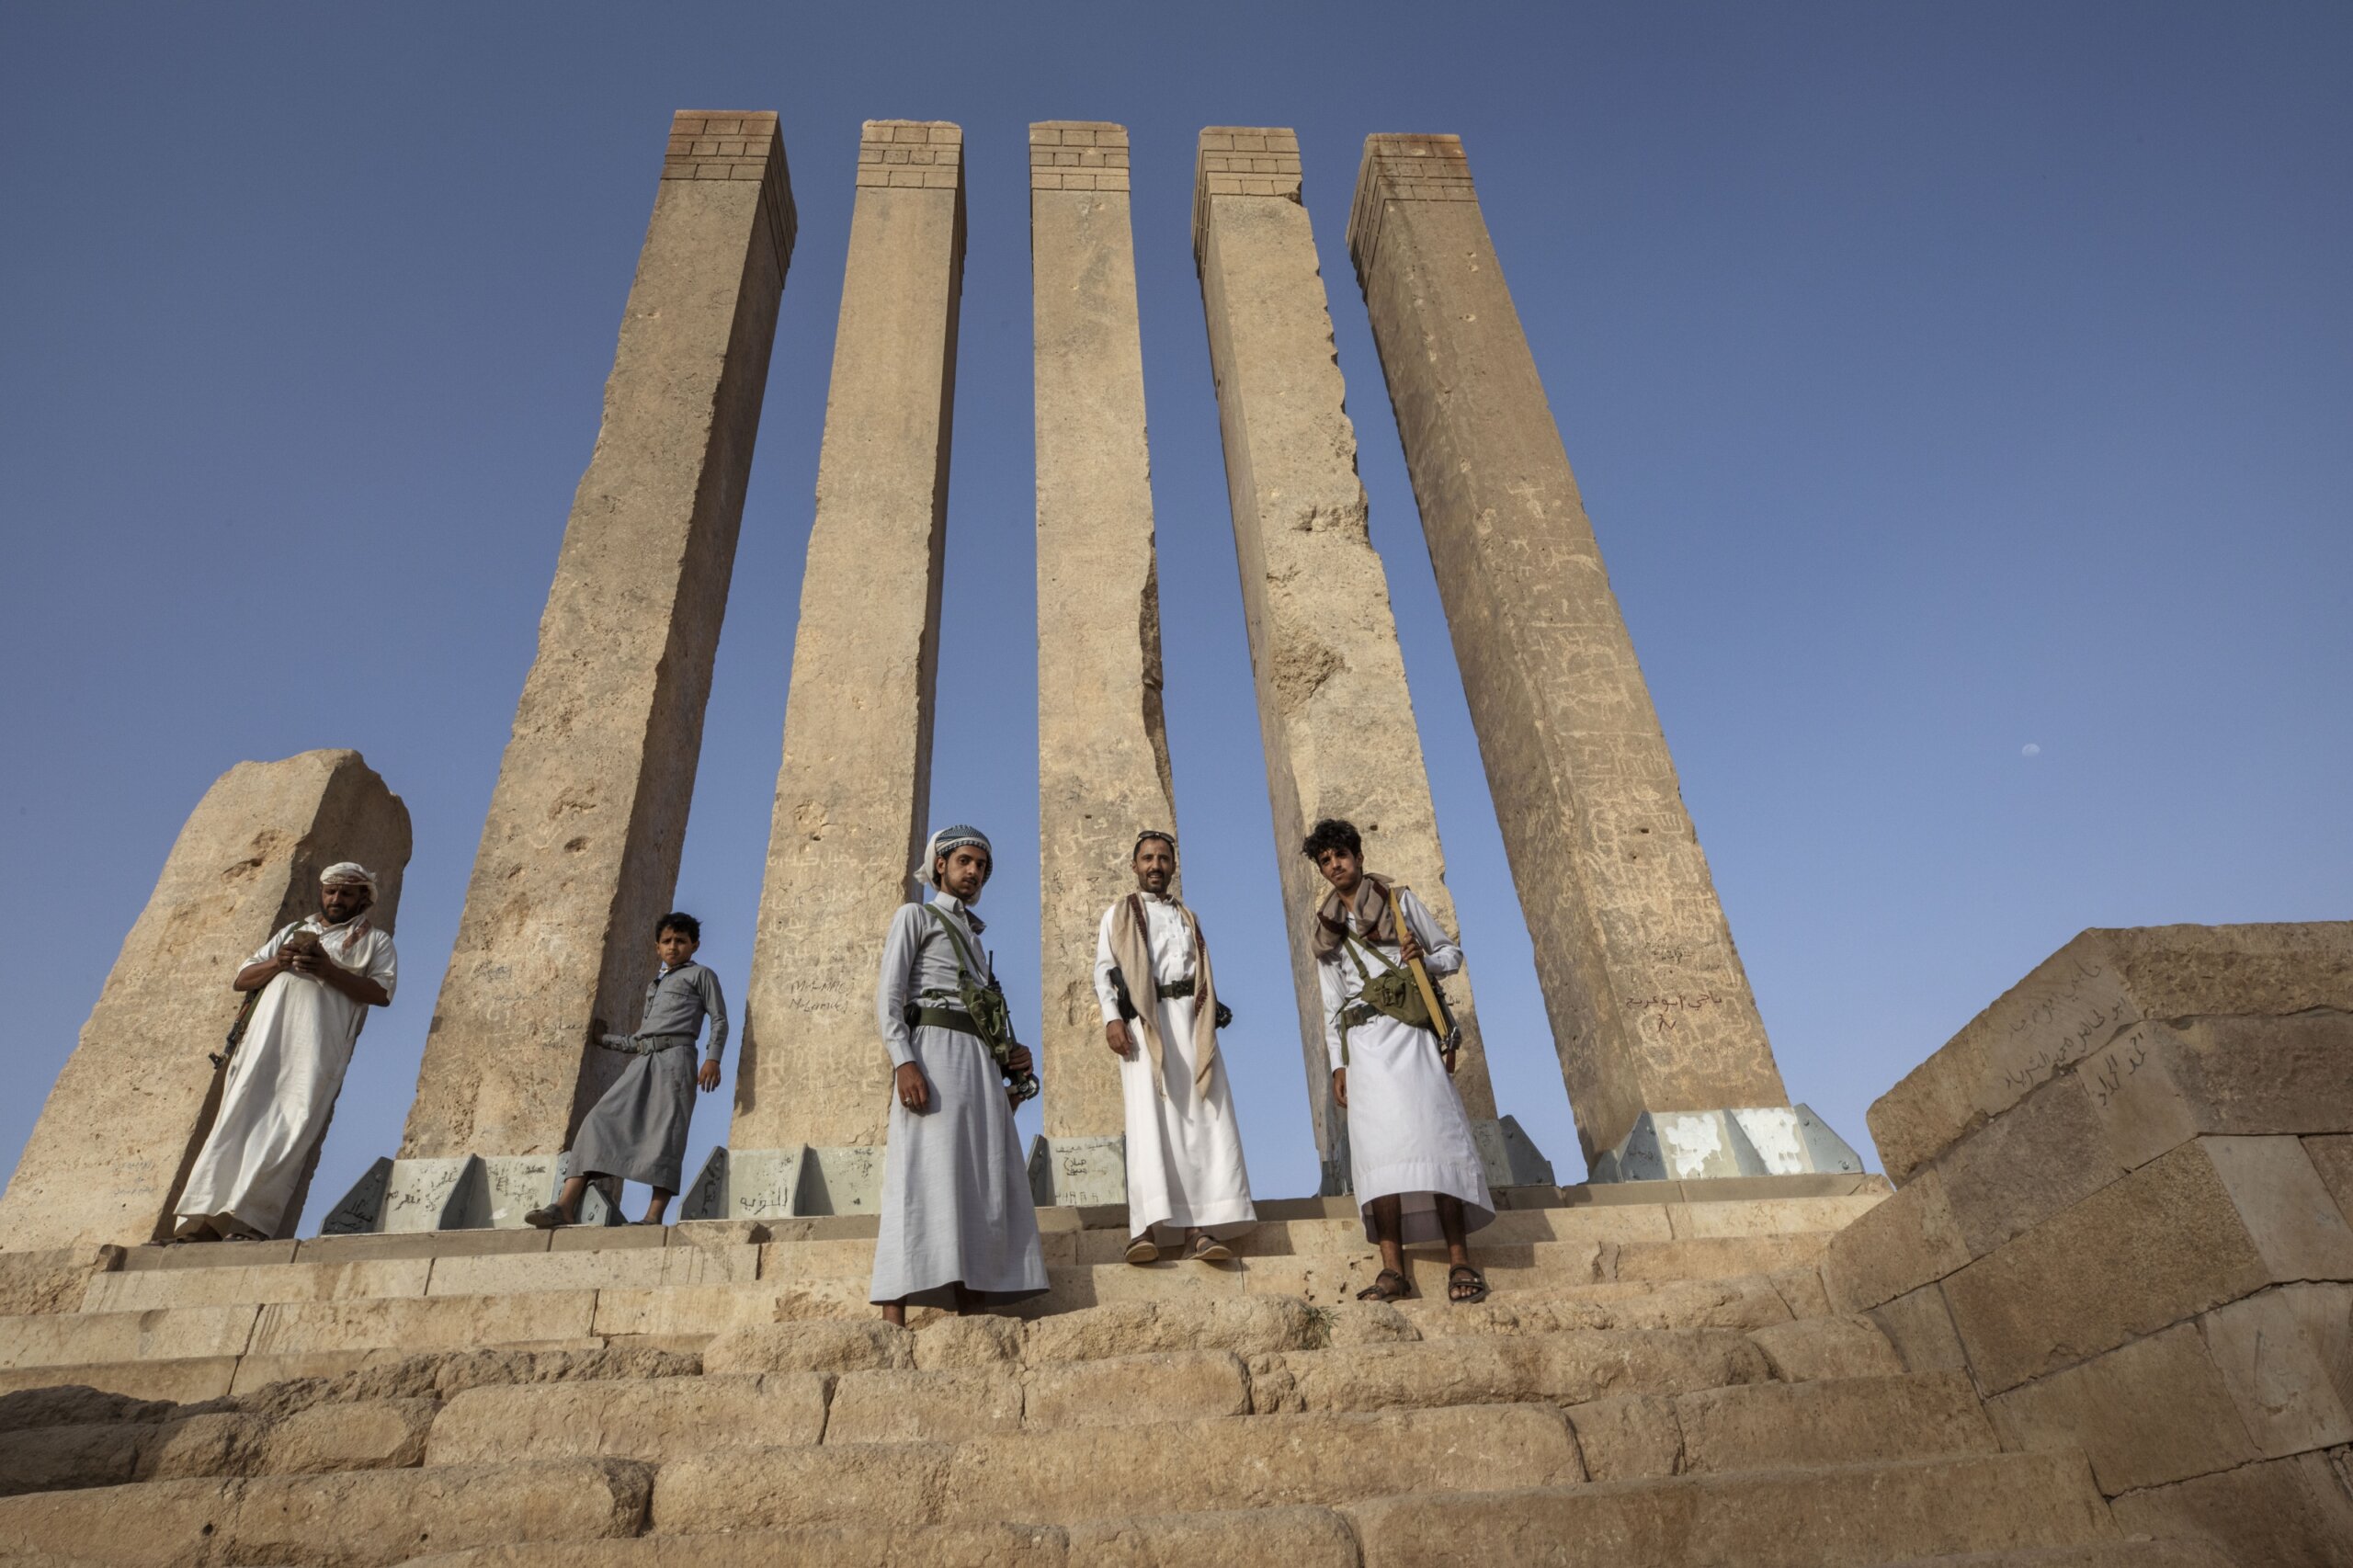 Yemen and Lebanon sites added to UNESCO world heritage list